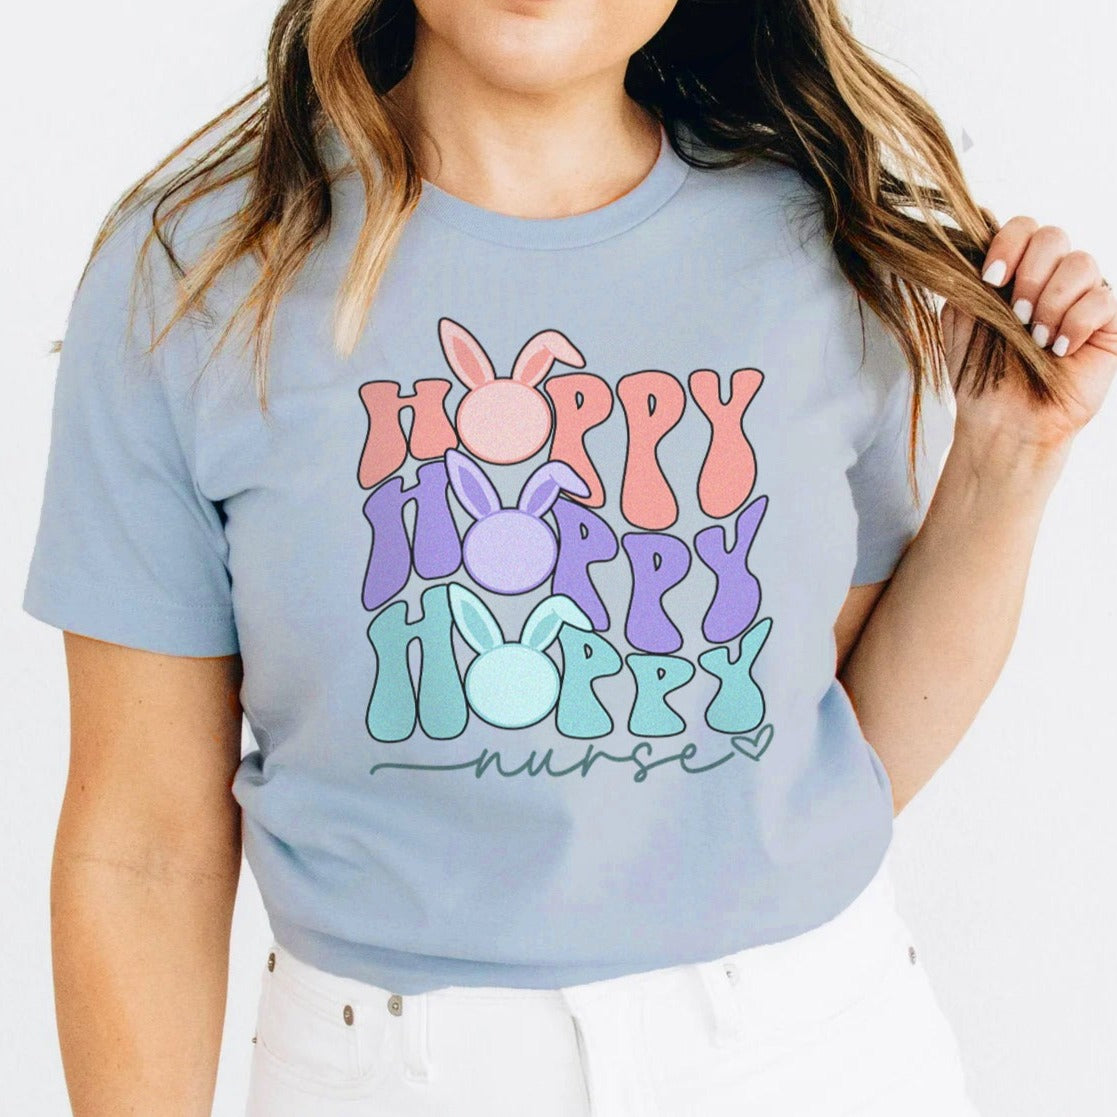 Retro Hoppy Nurse T-Shirt